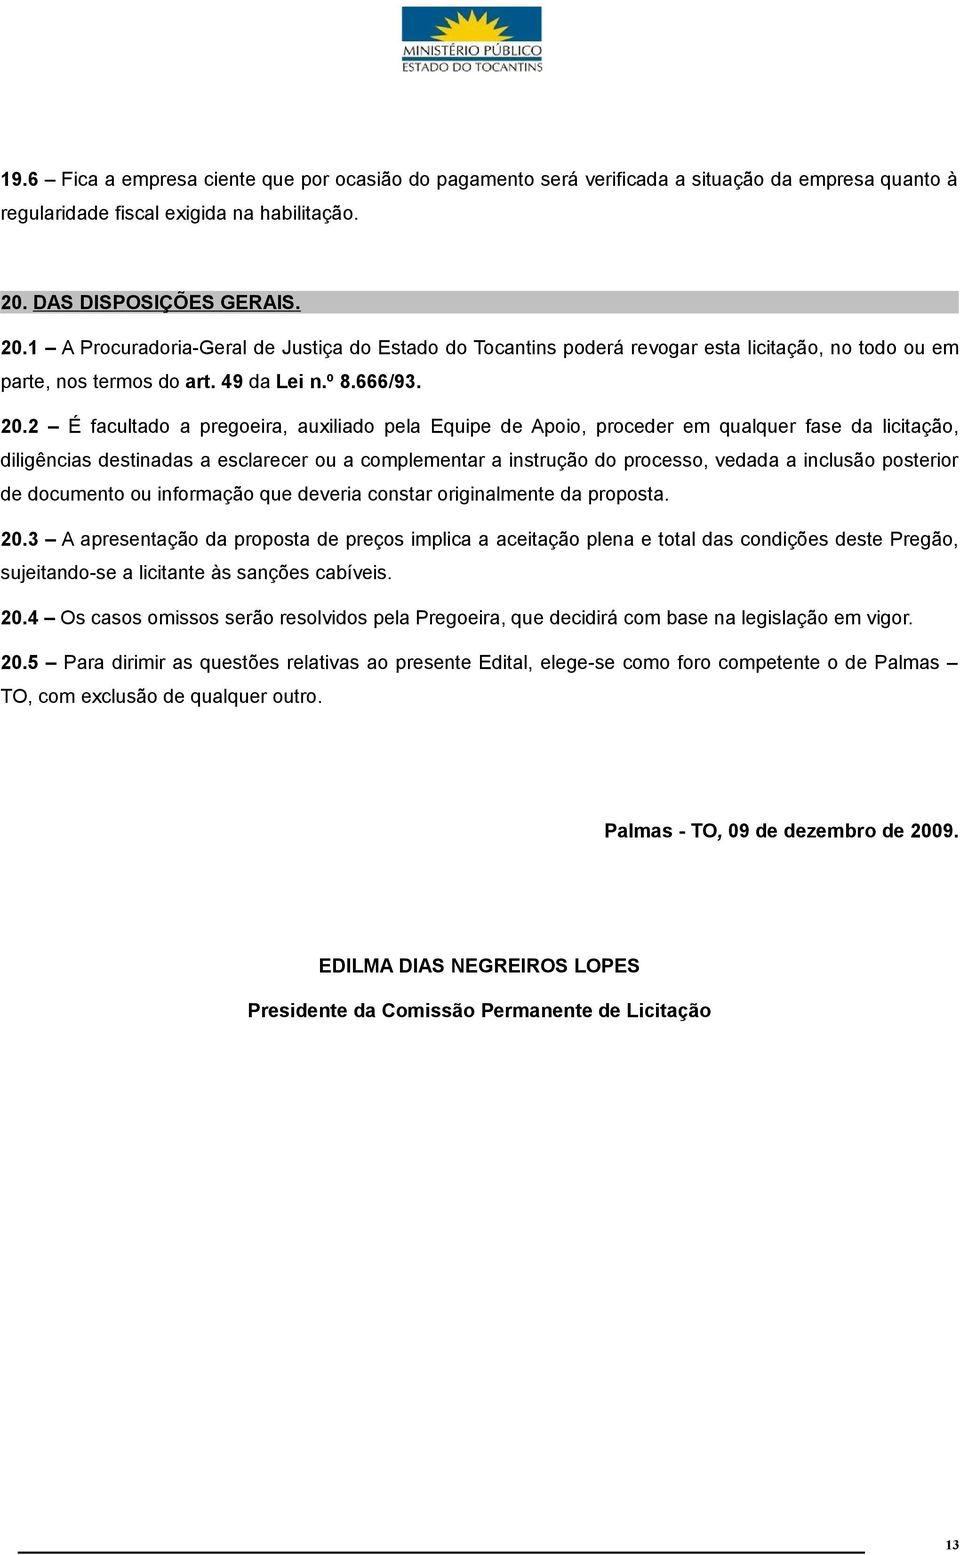 1 A Procuradoria-Geral de Justiça do Estado do Tocantins poderá revogar esta licitação, no todo ou em parte, nos termos do art. 49 da Lei n.º 8.666/93. 20.